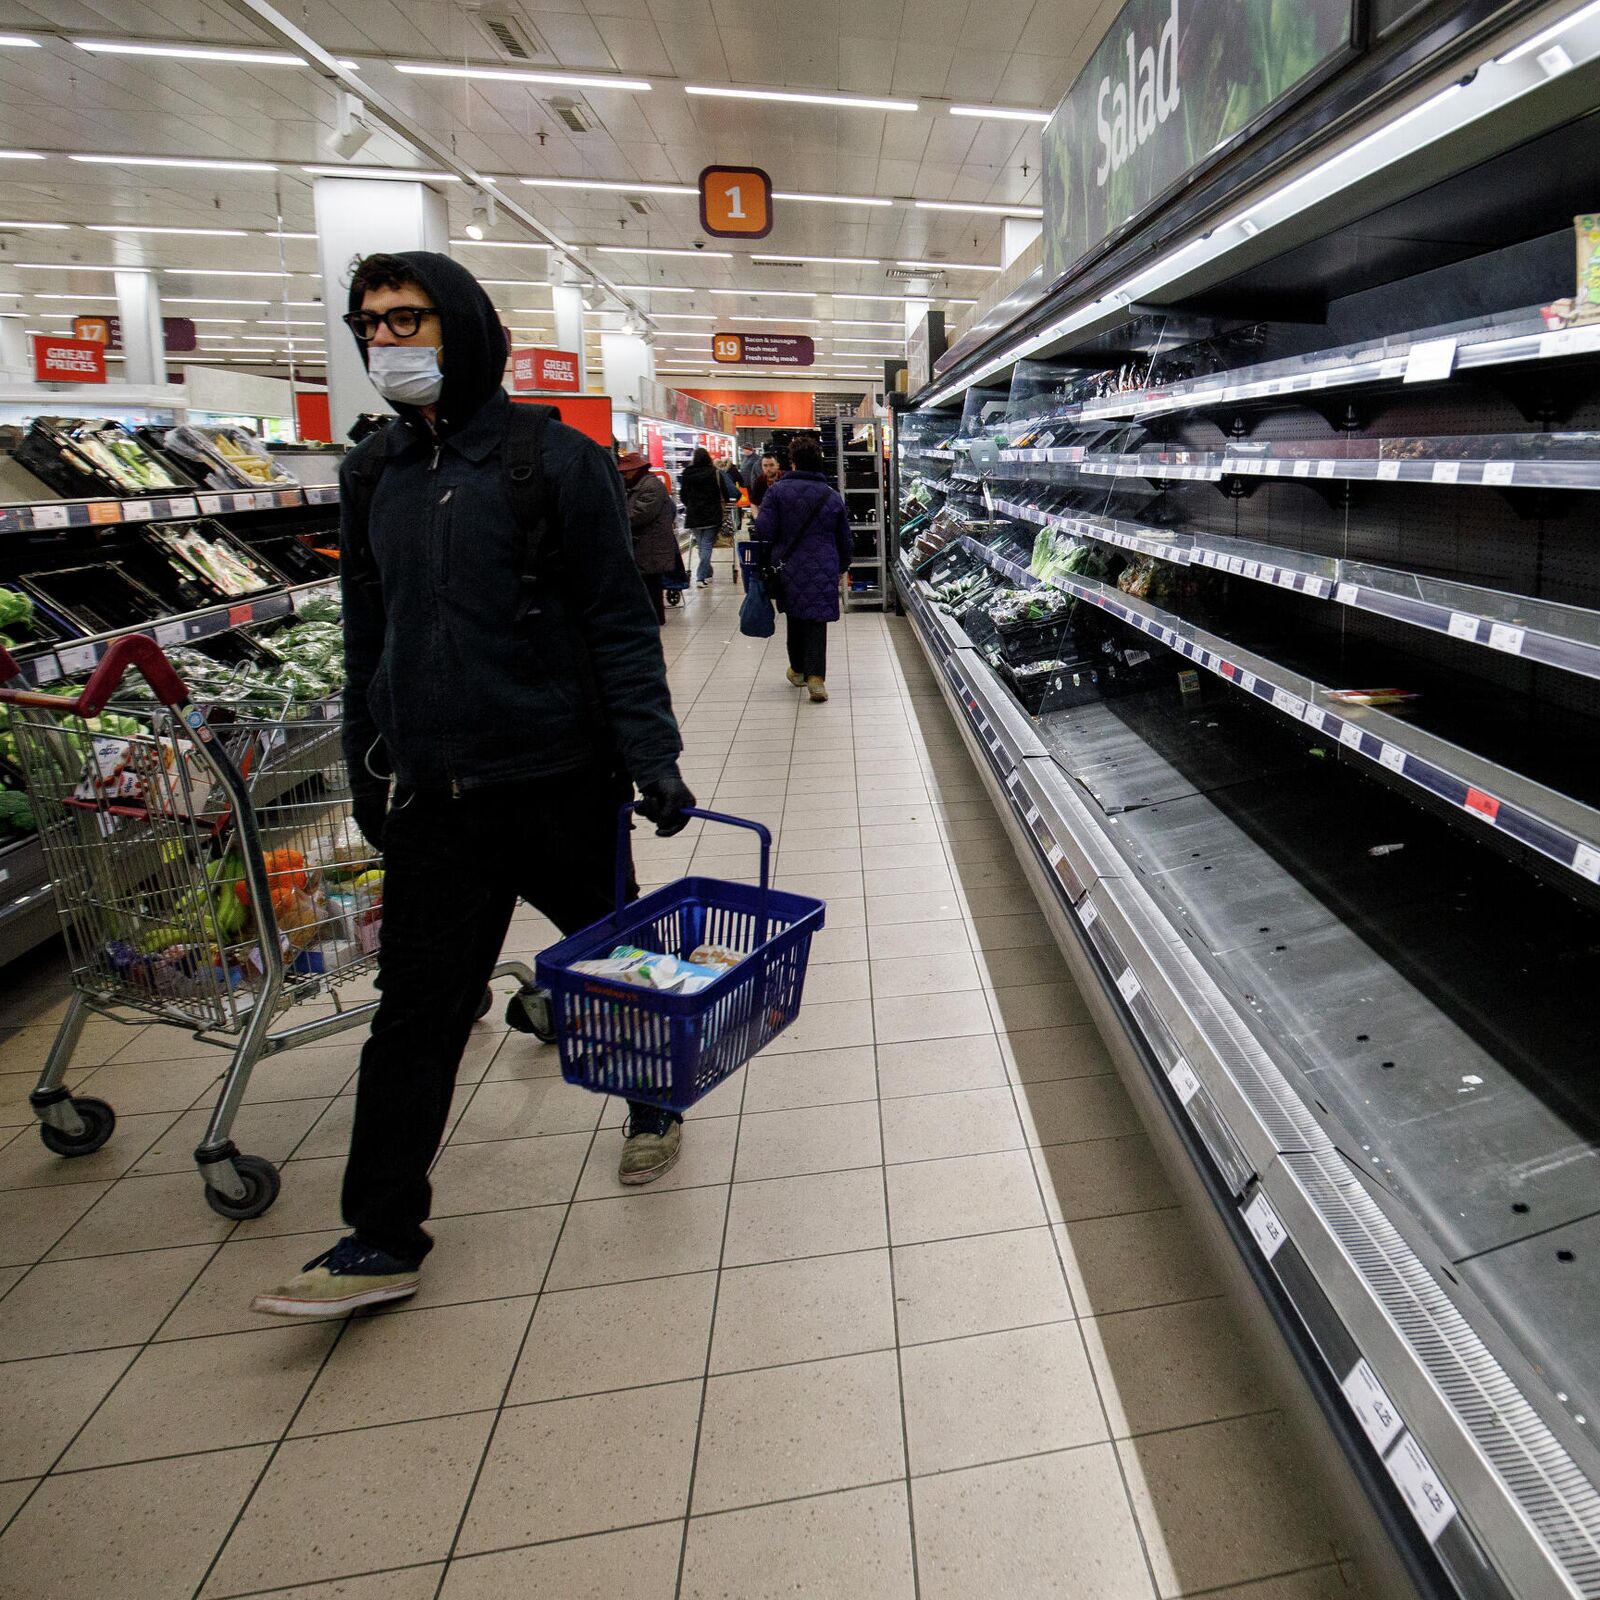 Акции В Магазинах И Супермаркетах Владимира